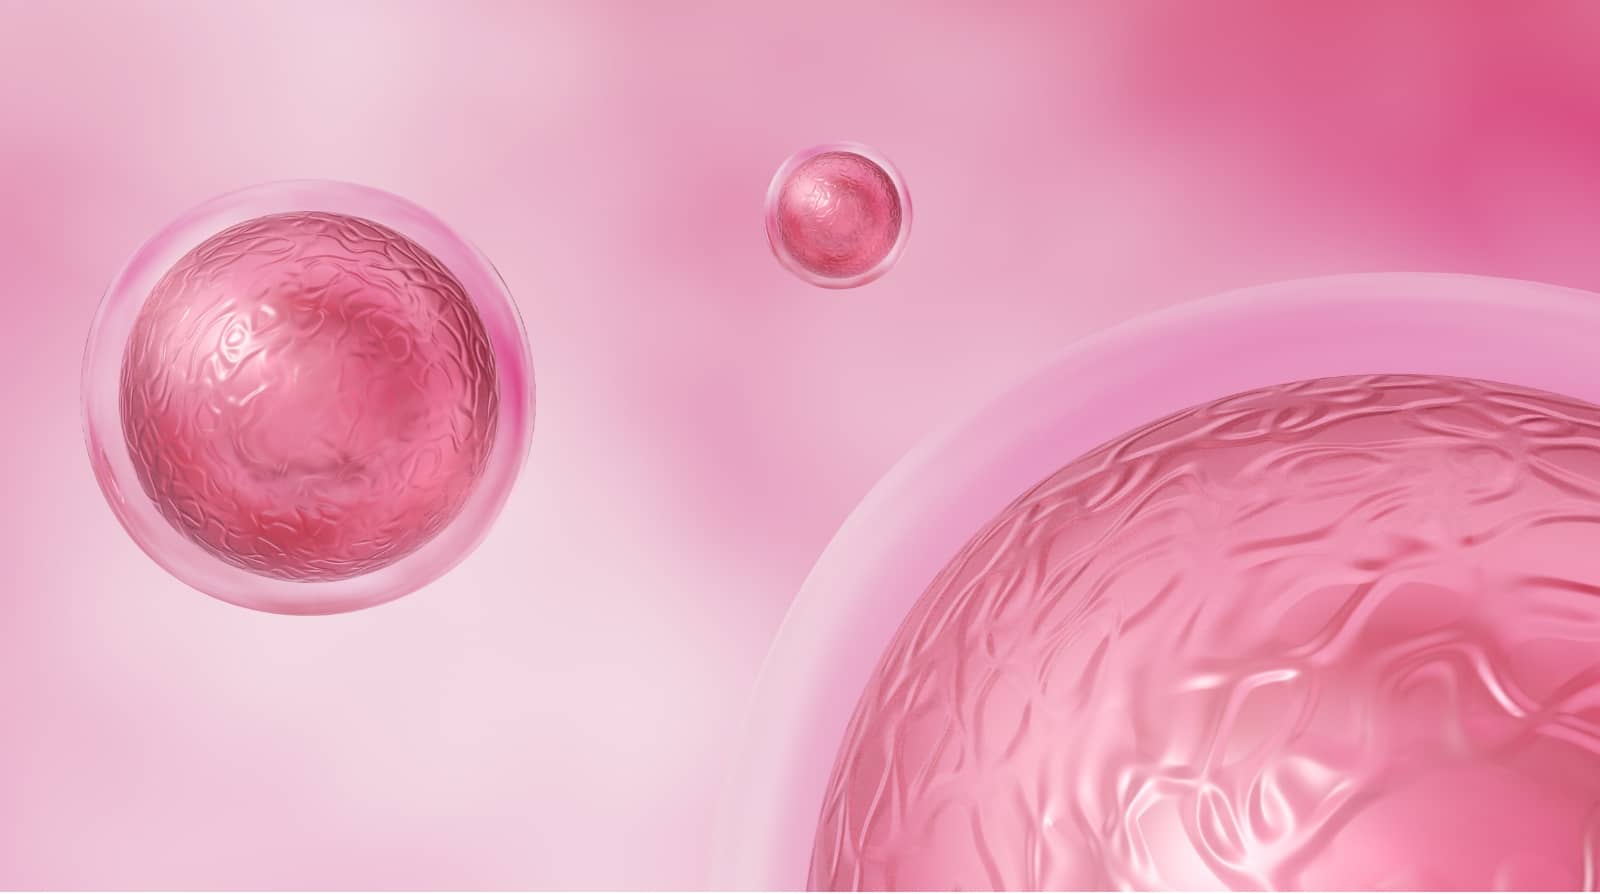 Células madre: avances y nuevas investigaciones